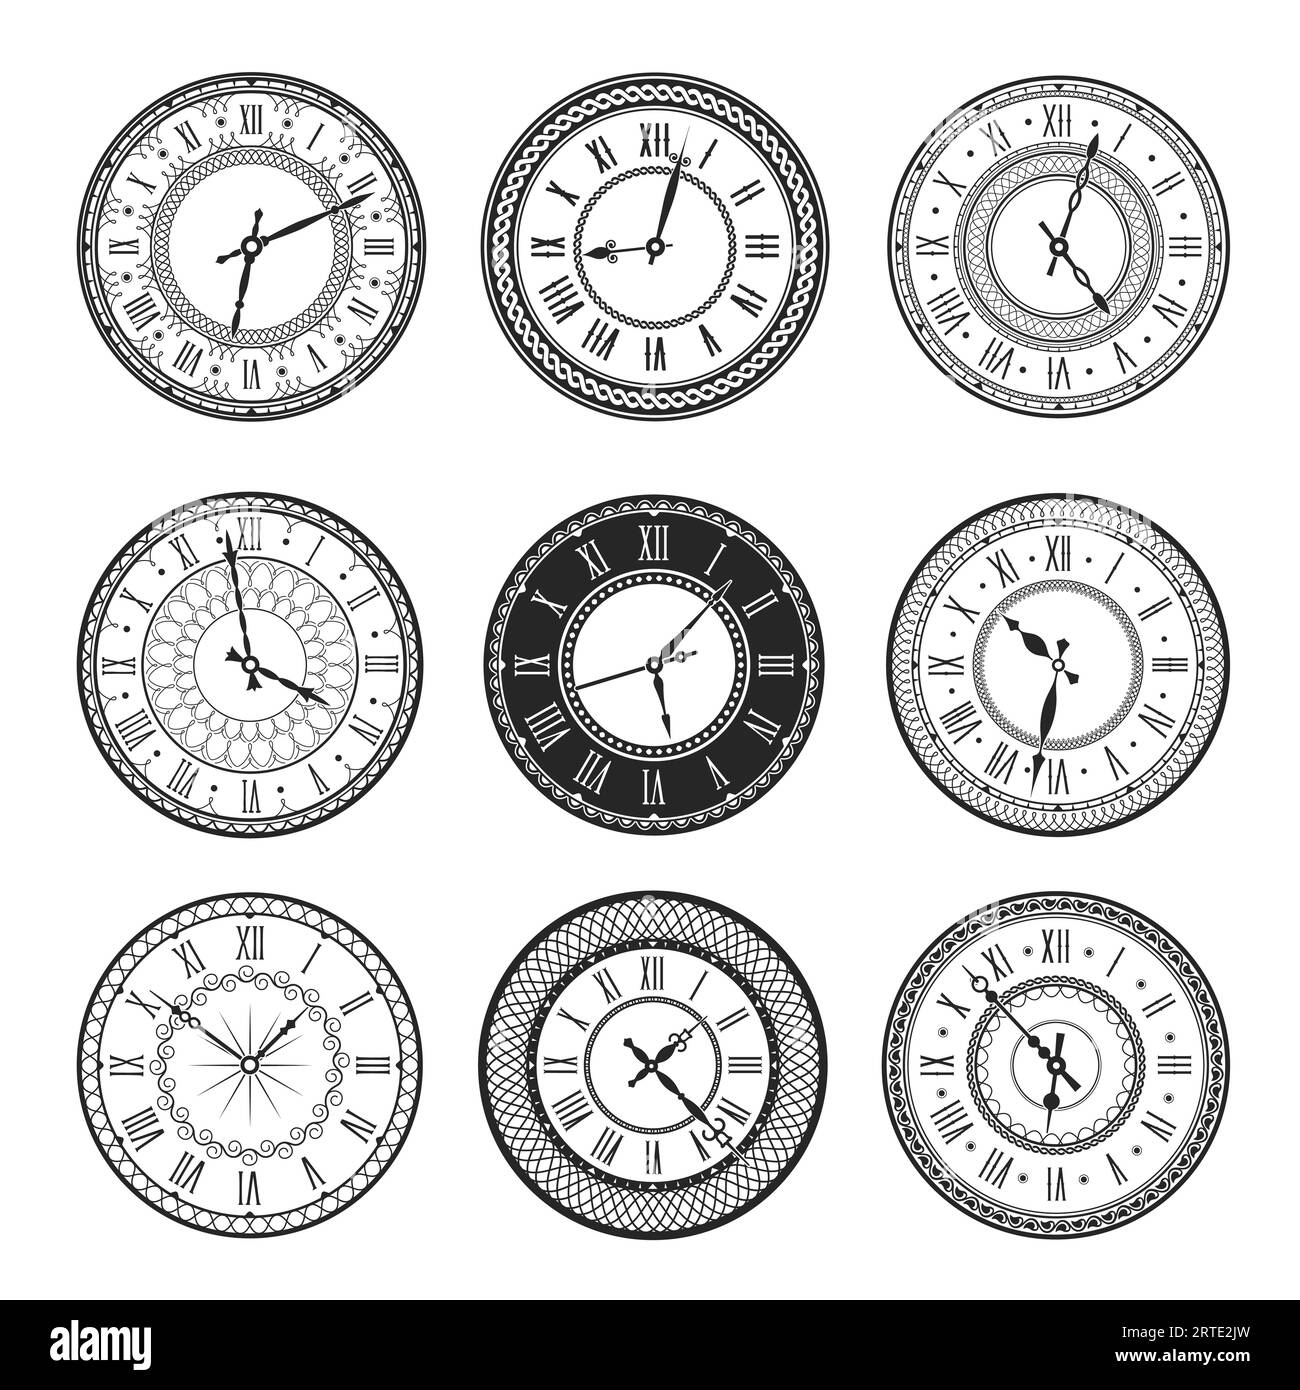 Vintage Uhr Gesicht isolierte Vektor-Ikonen von antiken Uhren mit schwarzen und weißen runden Zifferblättern. Wanduhren mit römischen Ziffern, kunstvollen Uhrzeigern und geometrischen Ornamenten, Zeitmessgerät Stock Vektor